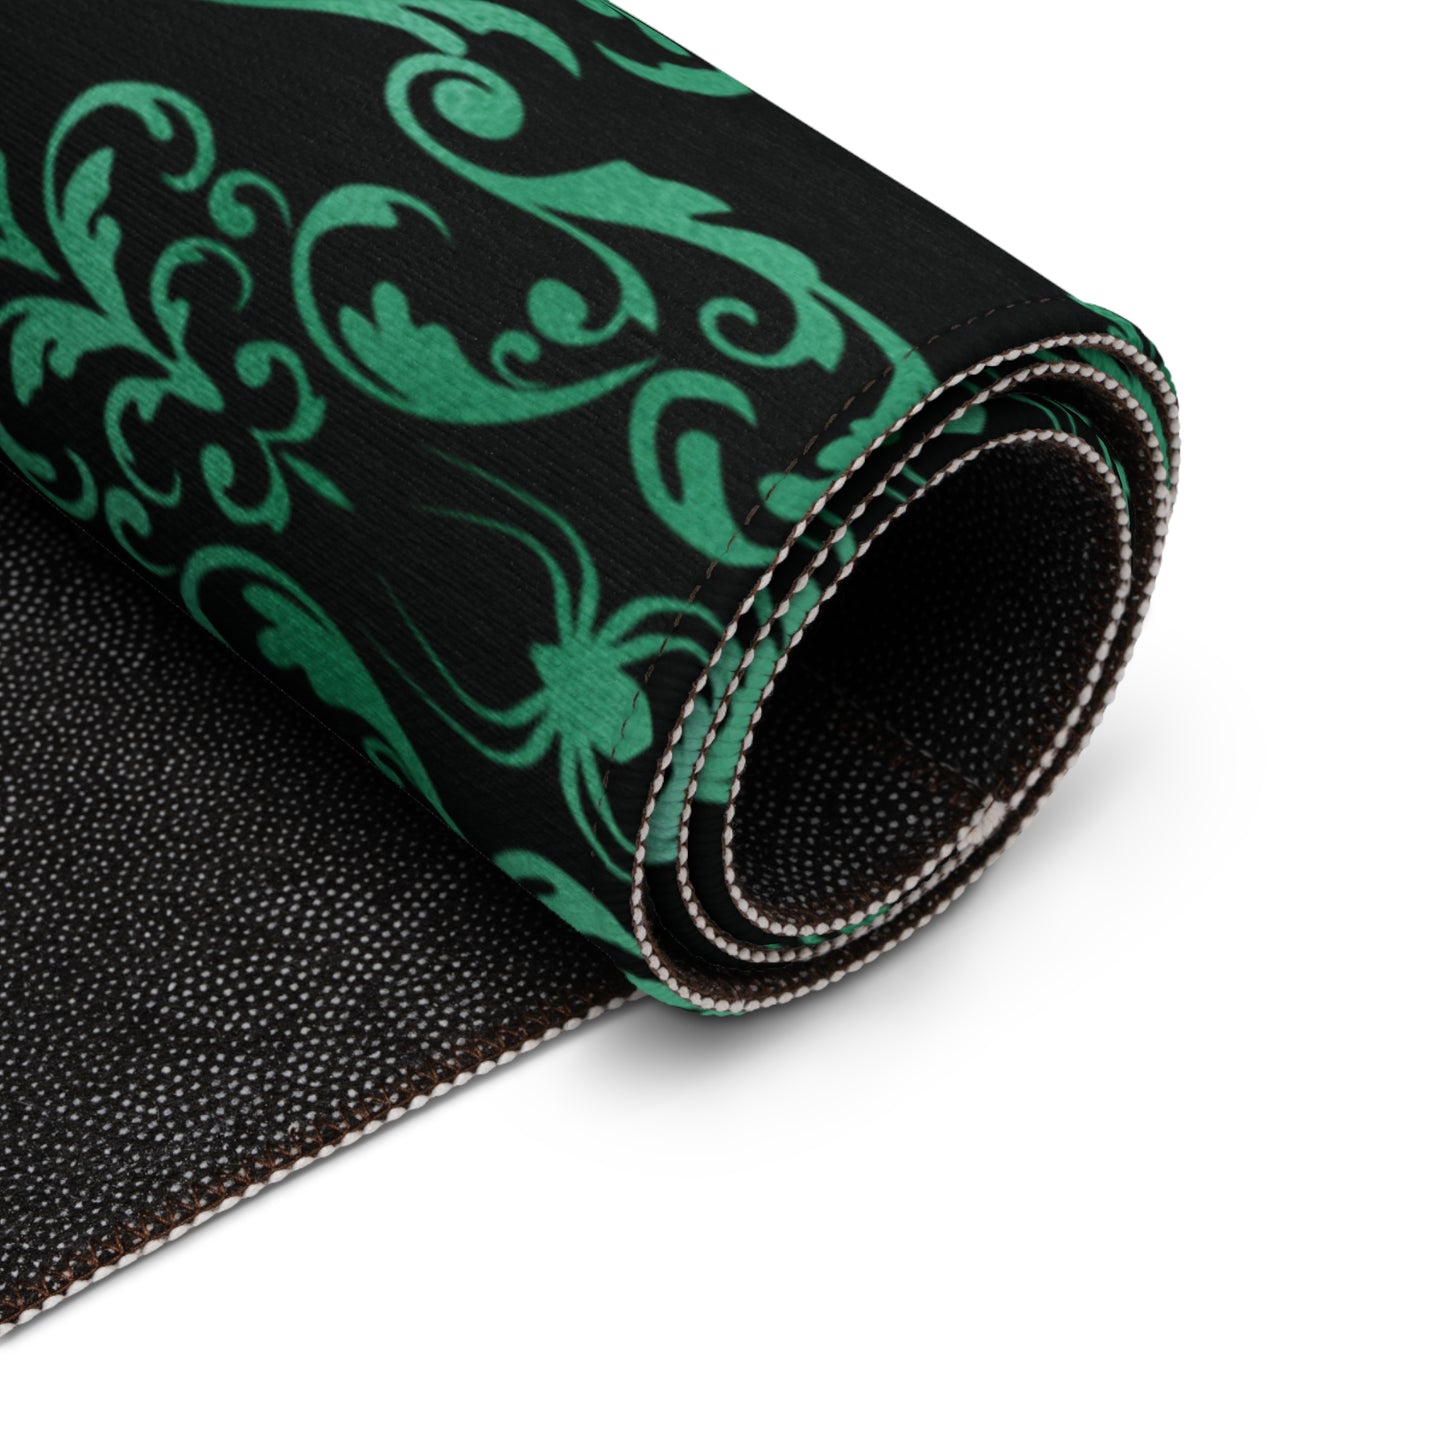 Dark Academia Victorian Goth Inspired Spider Damask Glam Goth Green & Black Accent Rug